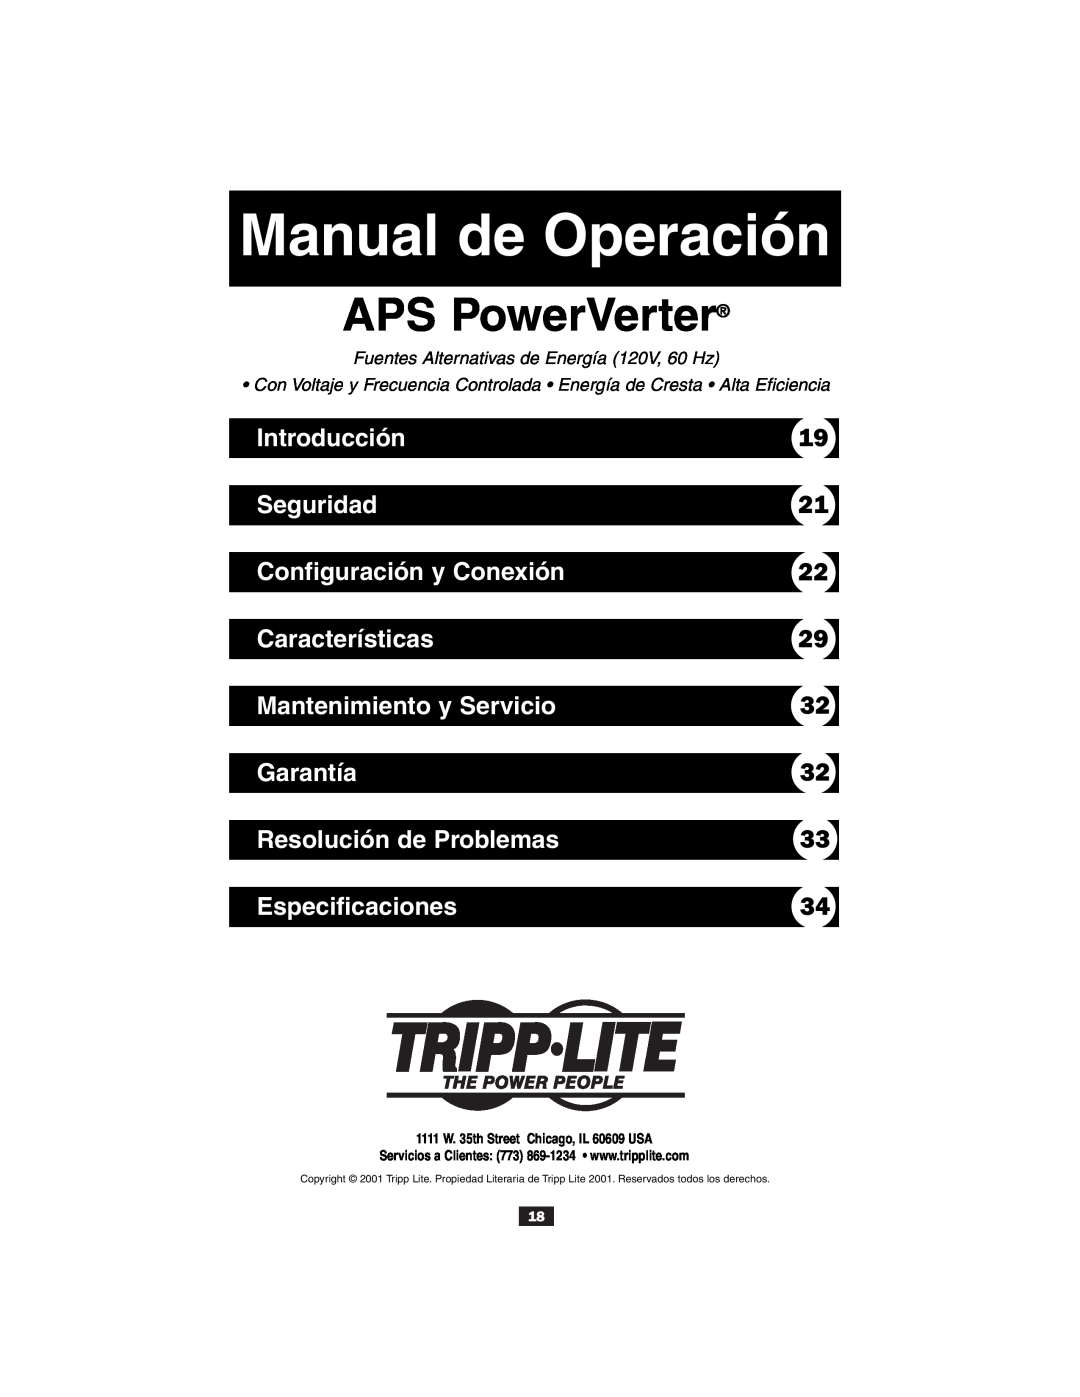 Tripp Lite Alternative Power Source Introducción, Seguridad, Configuración y Conexión, Características, Garantía 